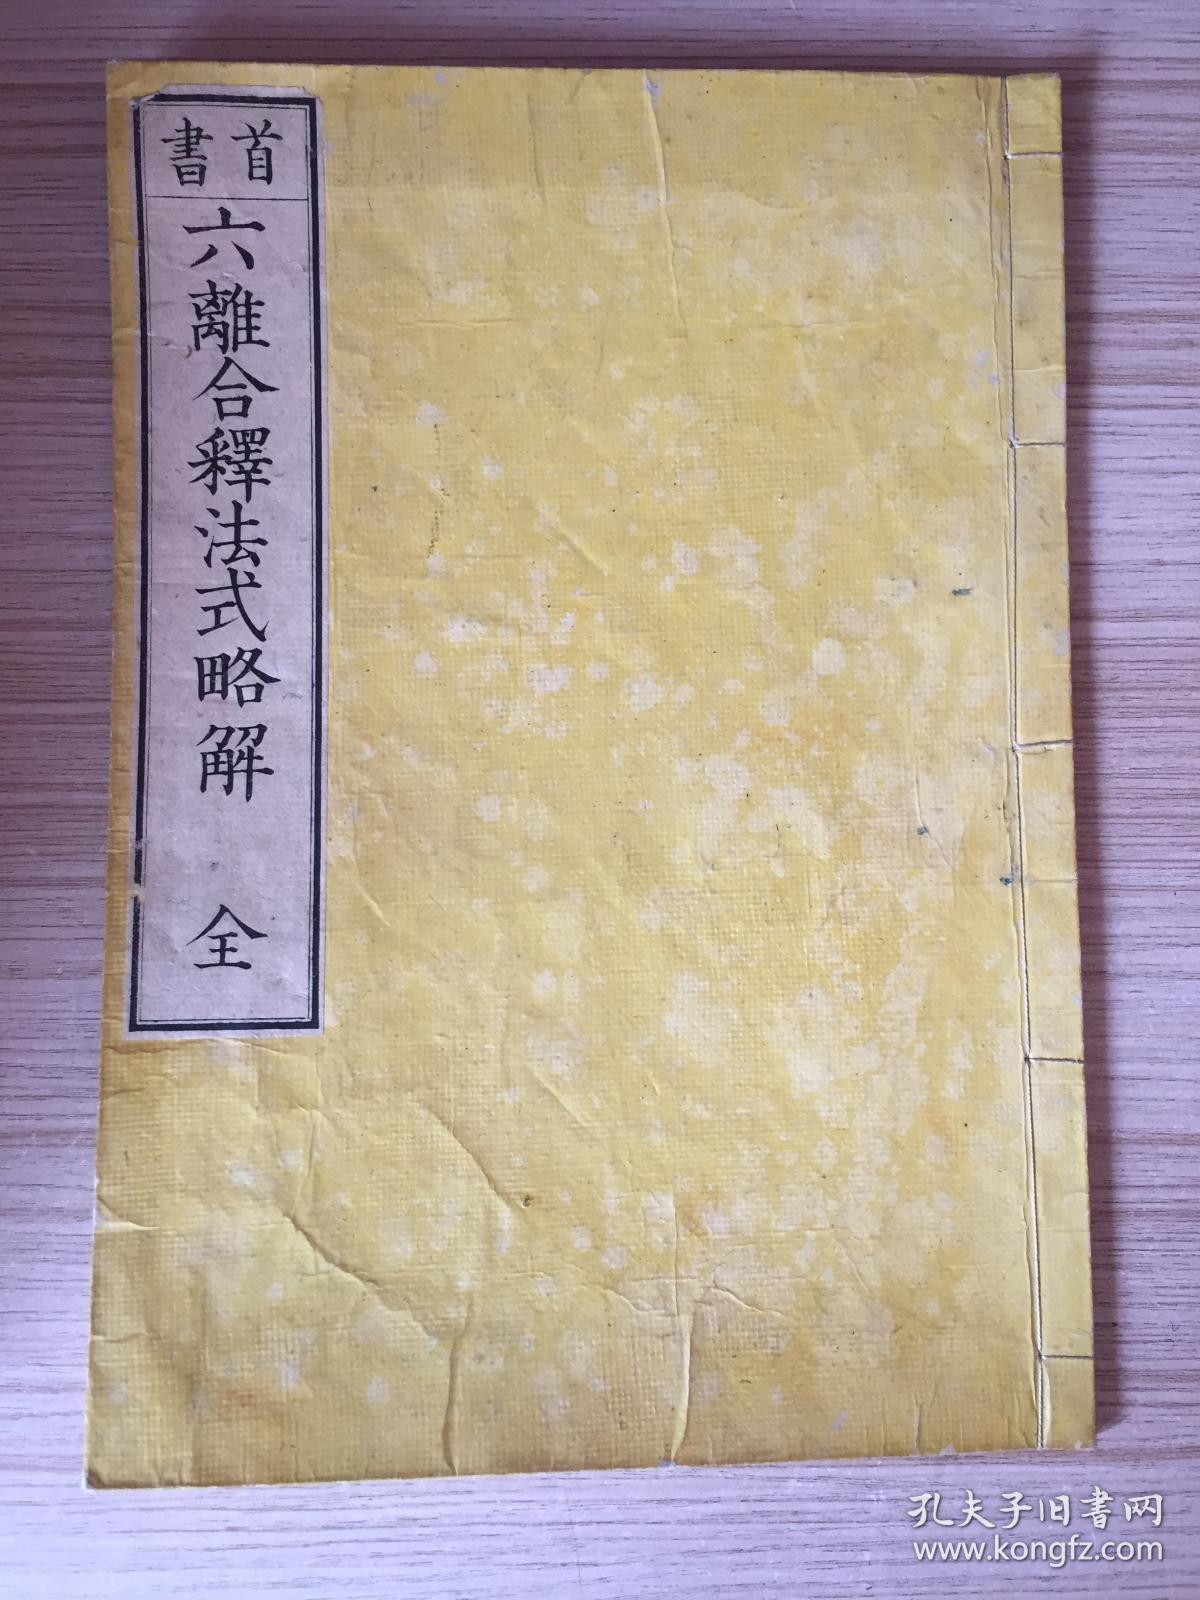 1885年和刻本《（首书）六离合释法式略解》一薄册全，大本全汉文，解释梵语或巴利语之复合词的六种文法规则